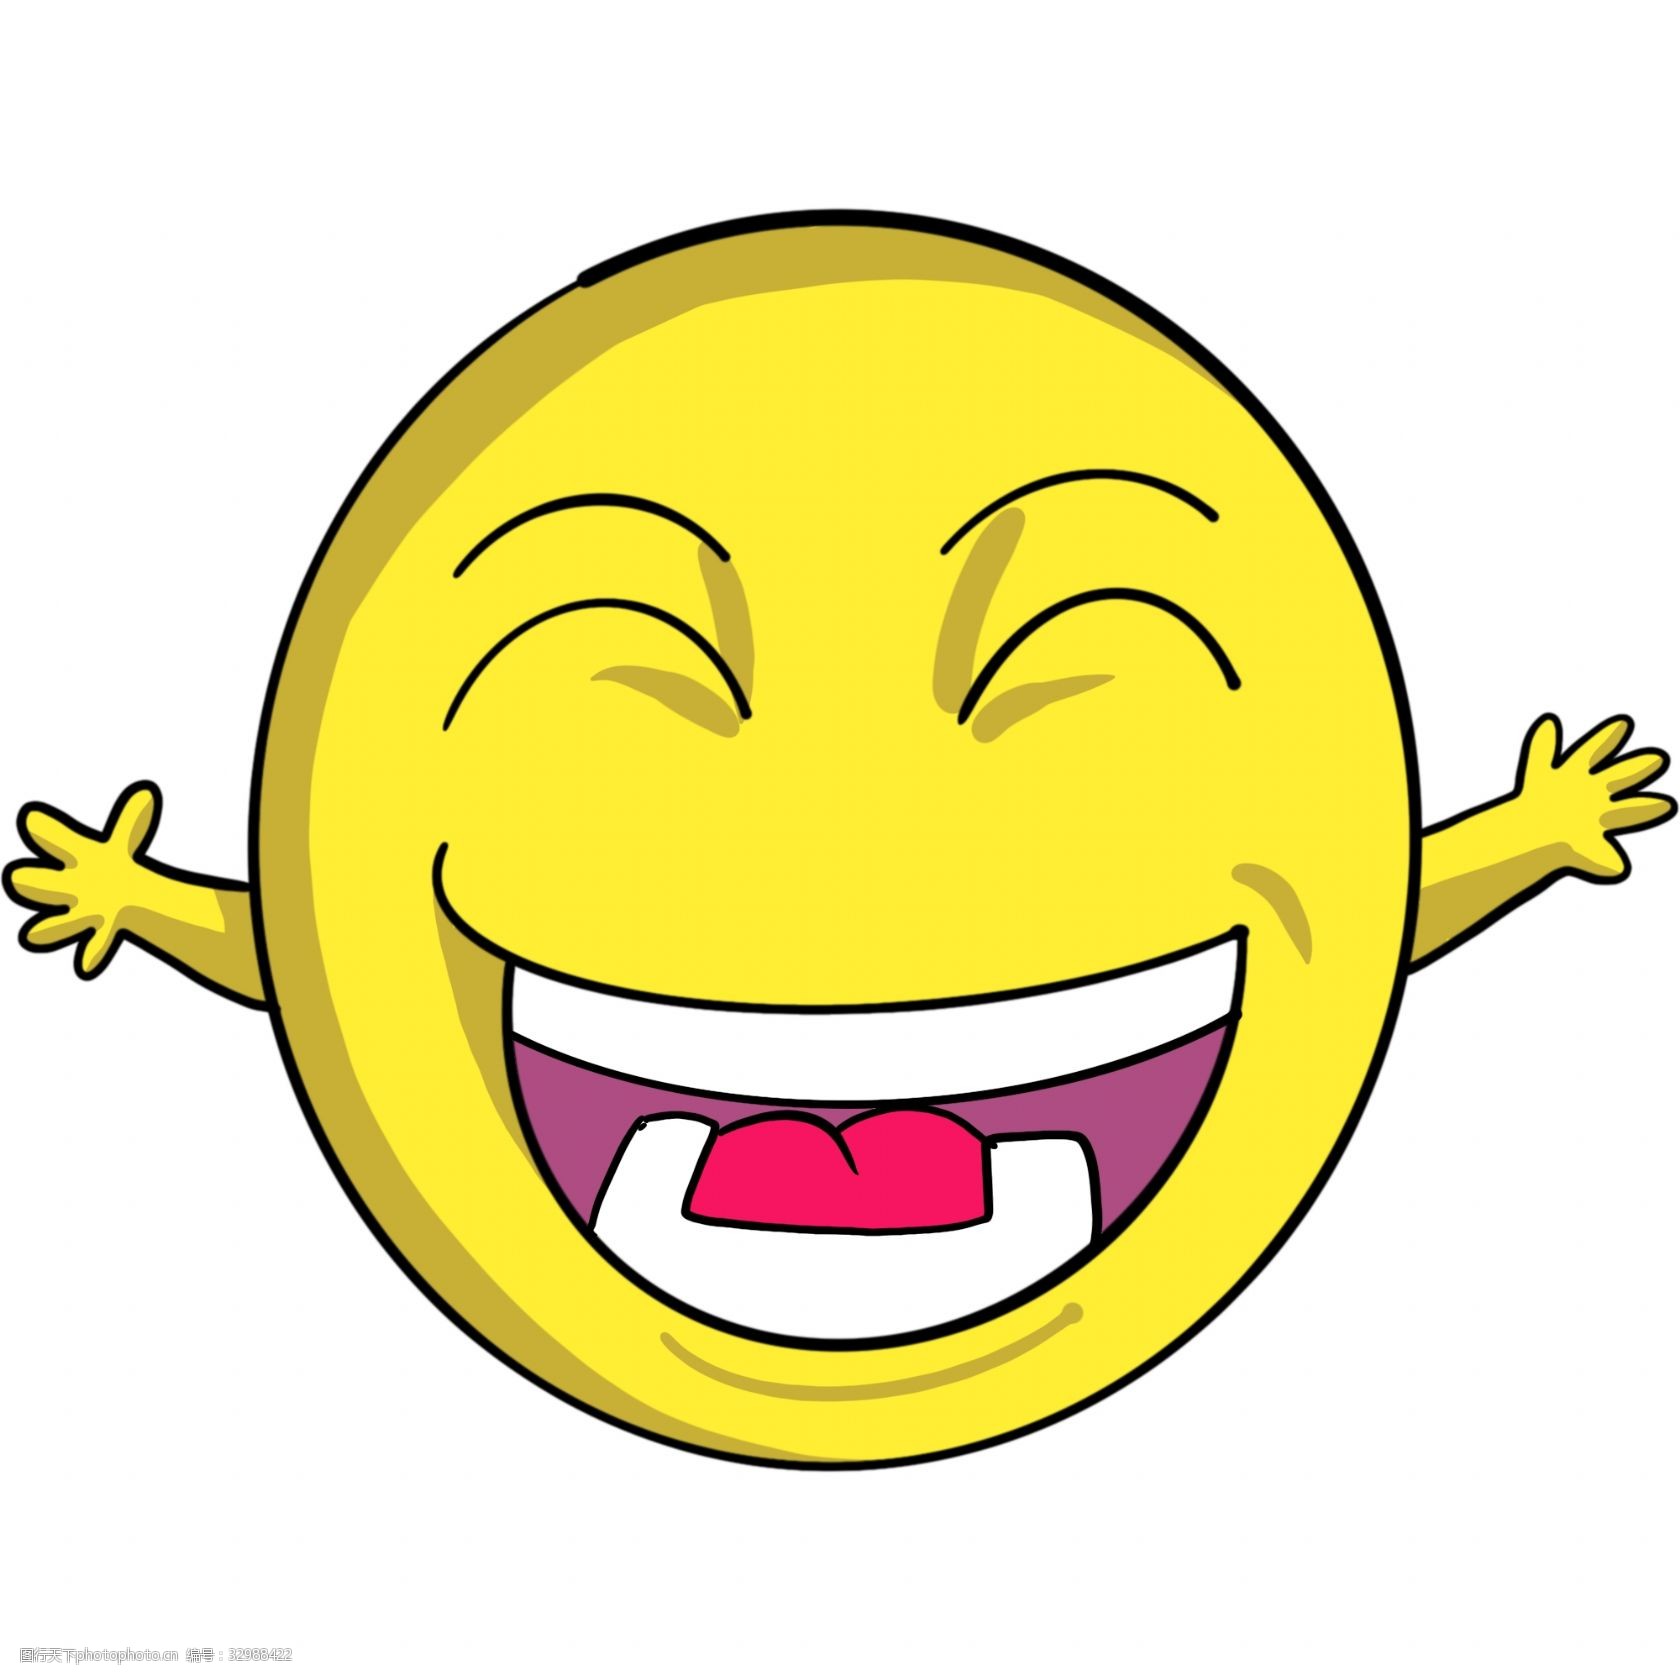 大笑的表情 圆形表情插画 笑脸插画 笑脸 黄色的笑脸 卡通表情插画